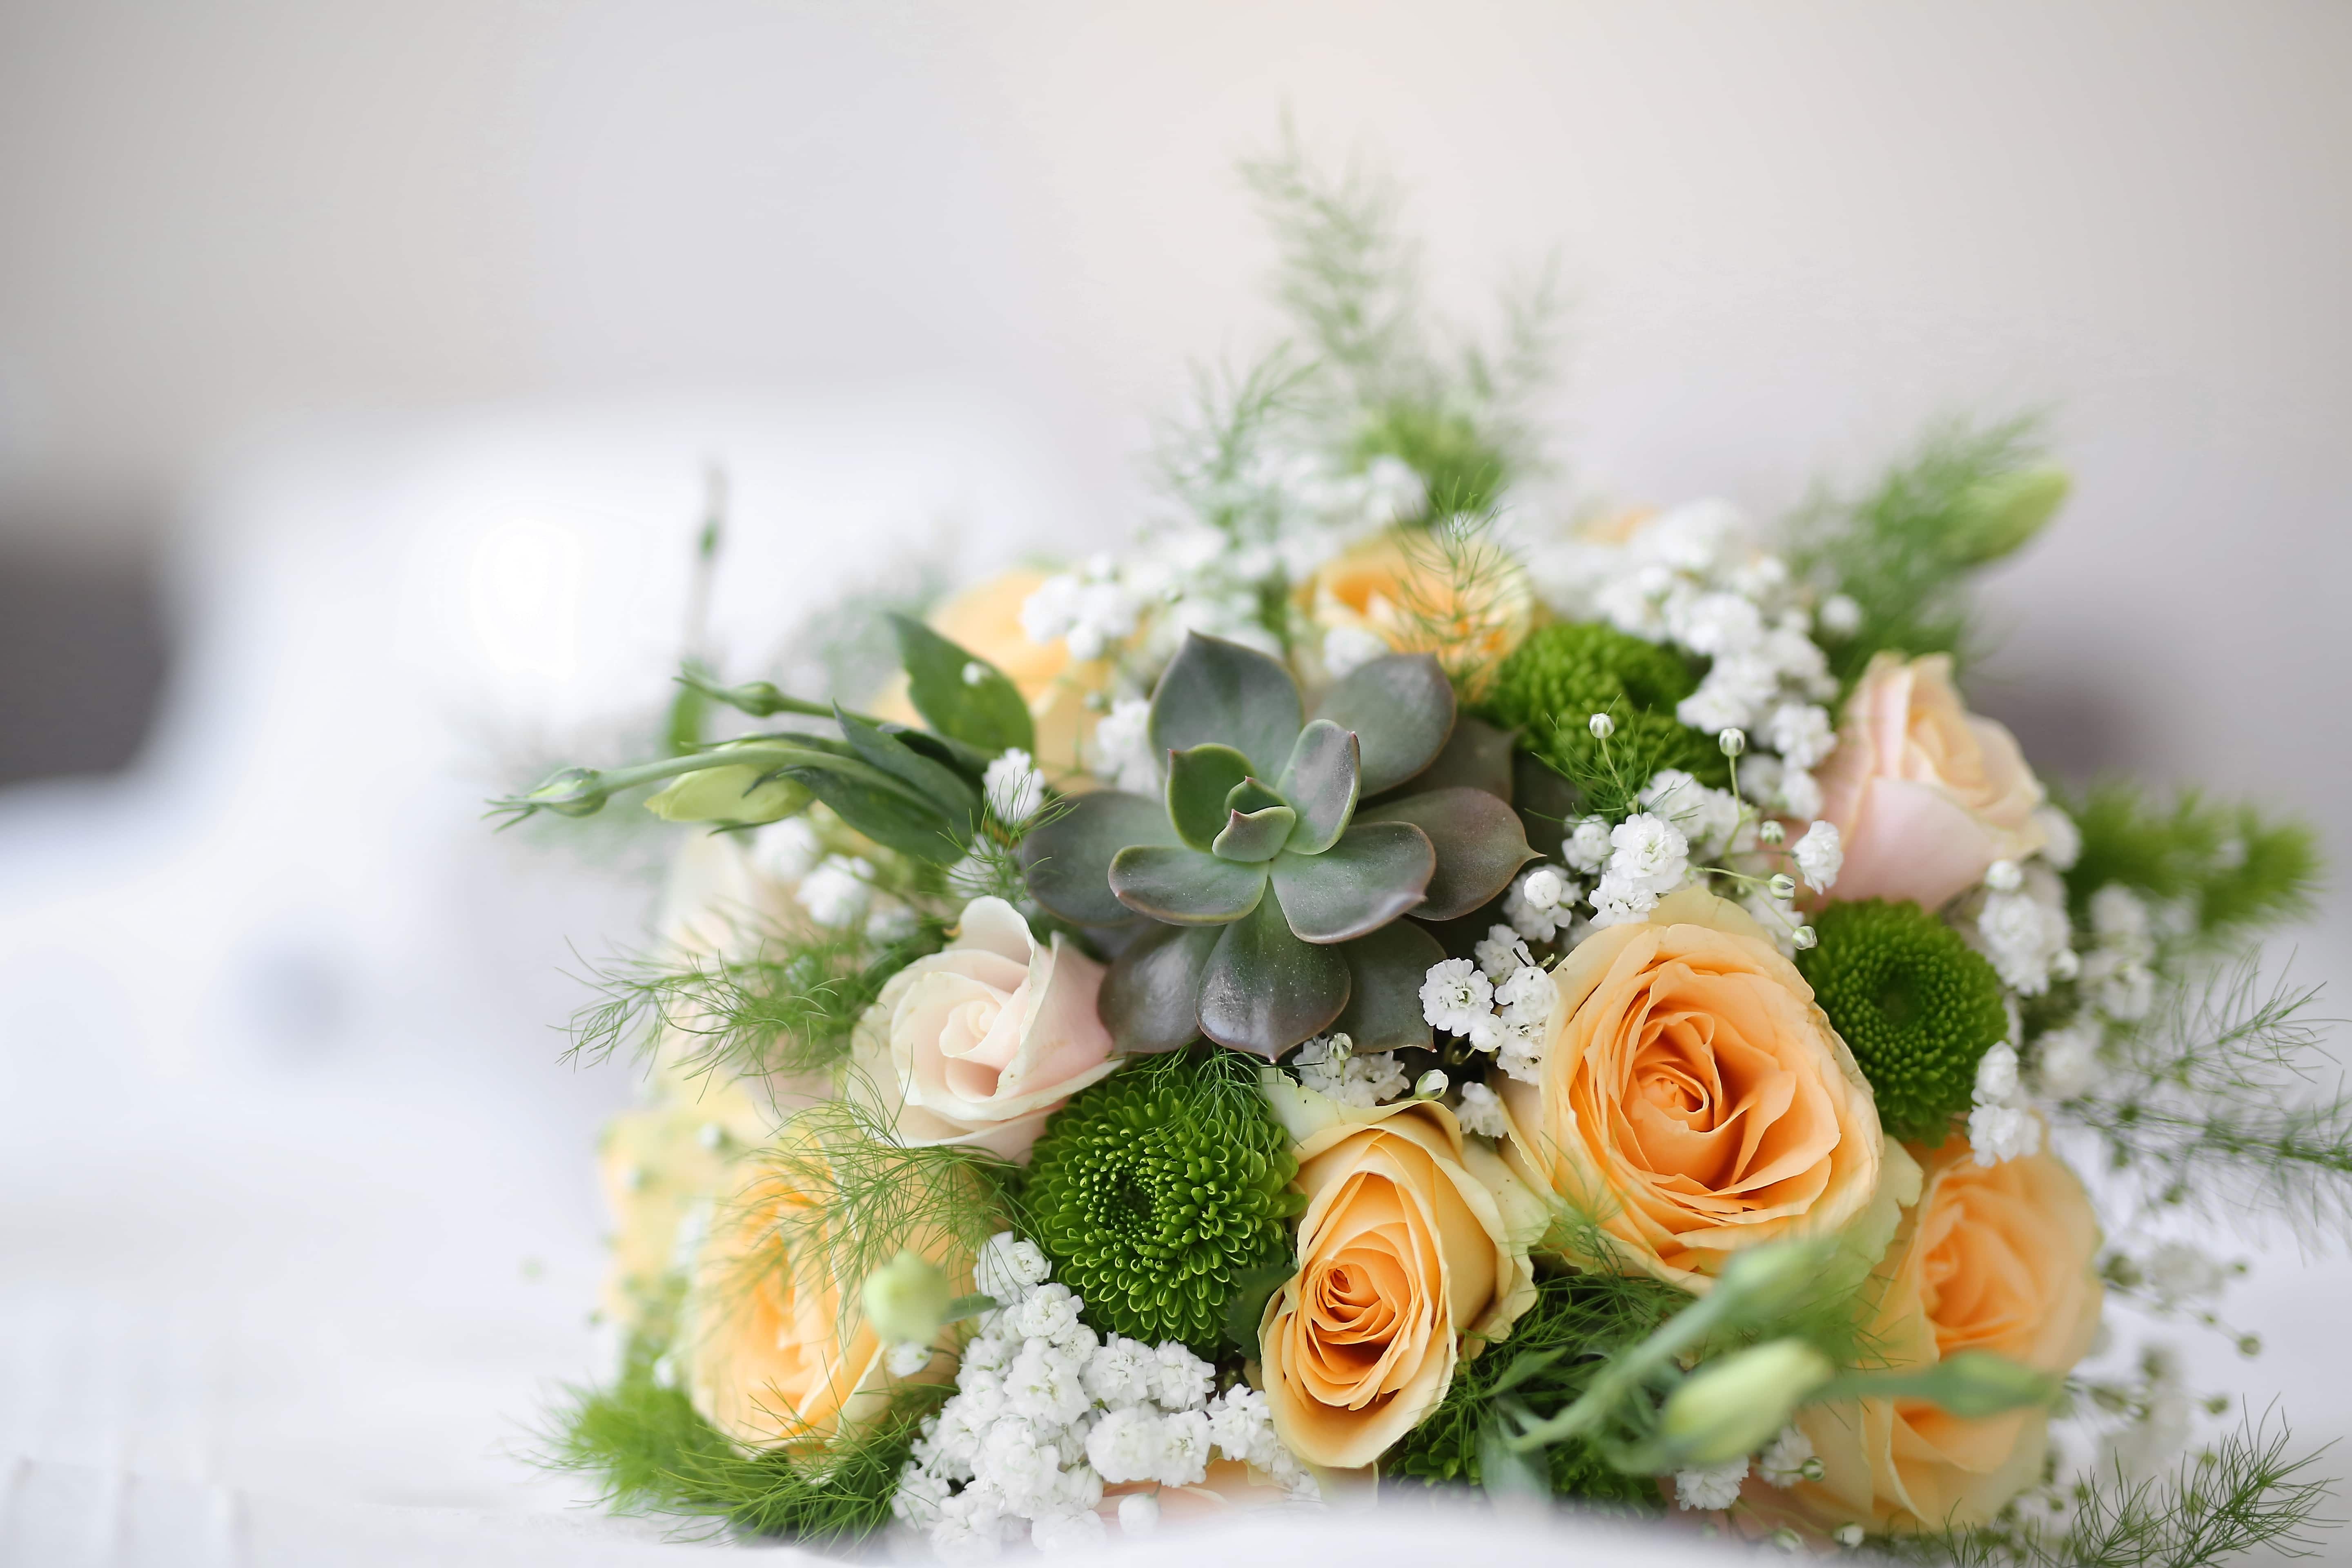 รูปภาพฟรี: ช่อดอกไม้งานแต่ง, ดอกกุหลาบ, แคคตัส, สง่างาม, วินเทจ, ใกล้ชิด,  ช่อดอกไม้, จัดเรียง, ตกแต่ง, งานแต่งงาน